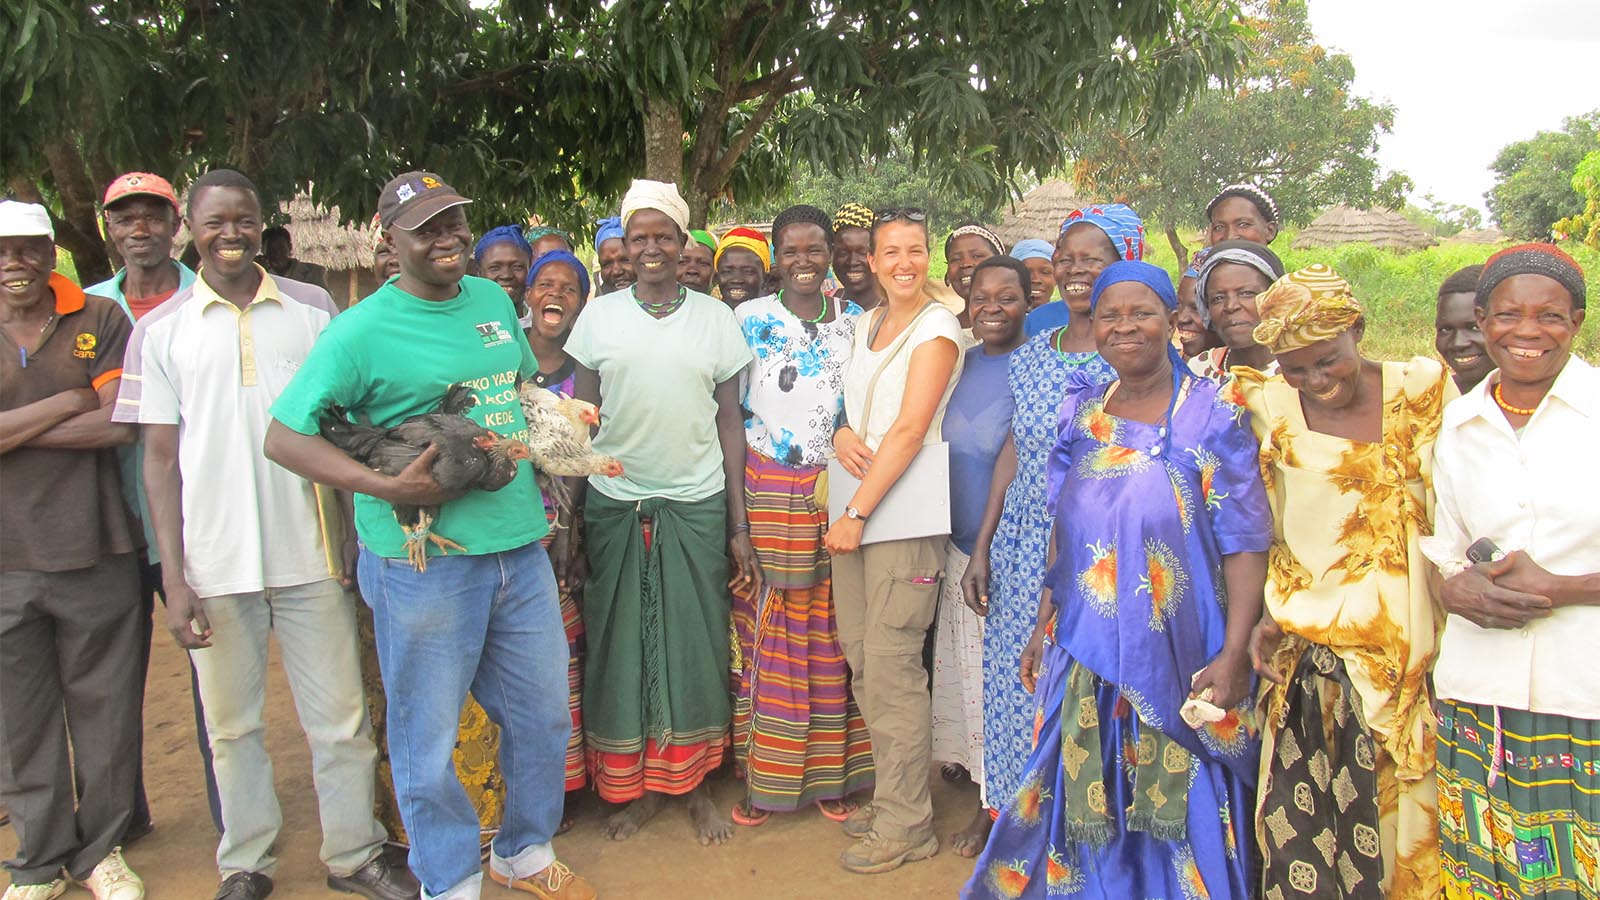 חגית פרויד (במרכז),  עם קבוצת הלוואה וחסכון במחוז קיטגום צפון אוגנדה, 2013. (צילום: אלבום פרטי)